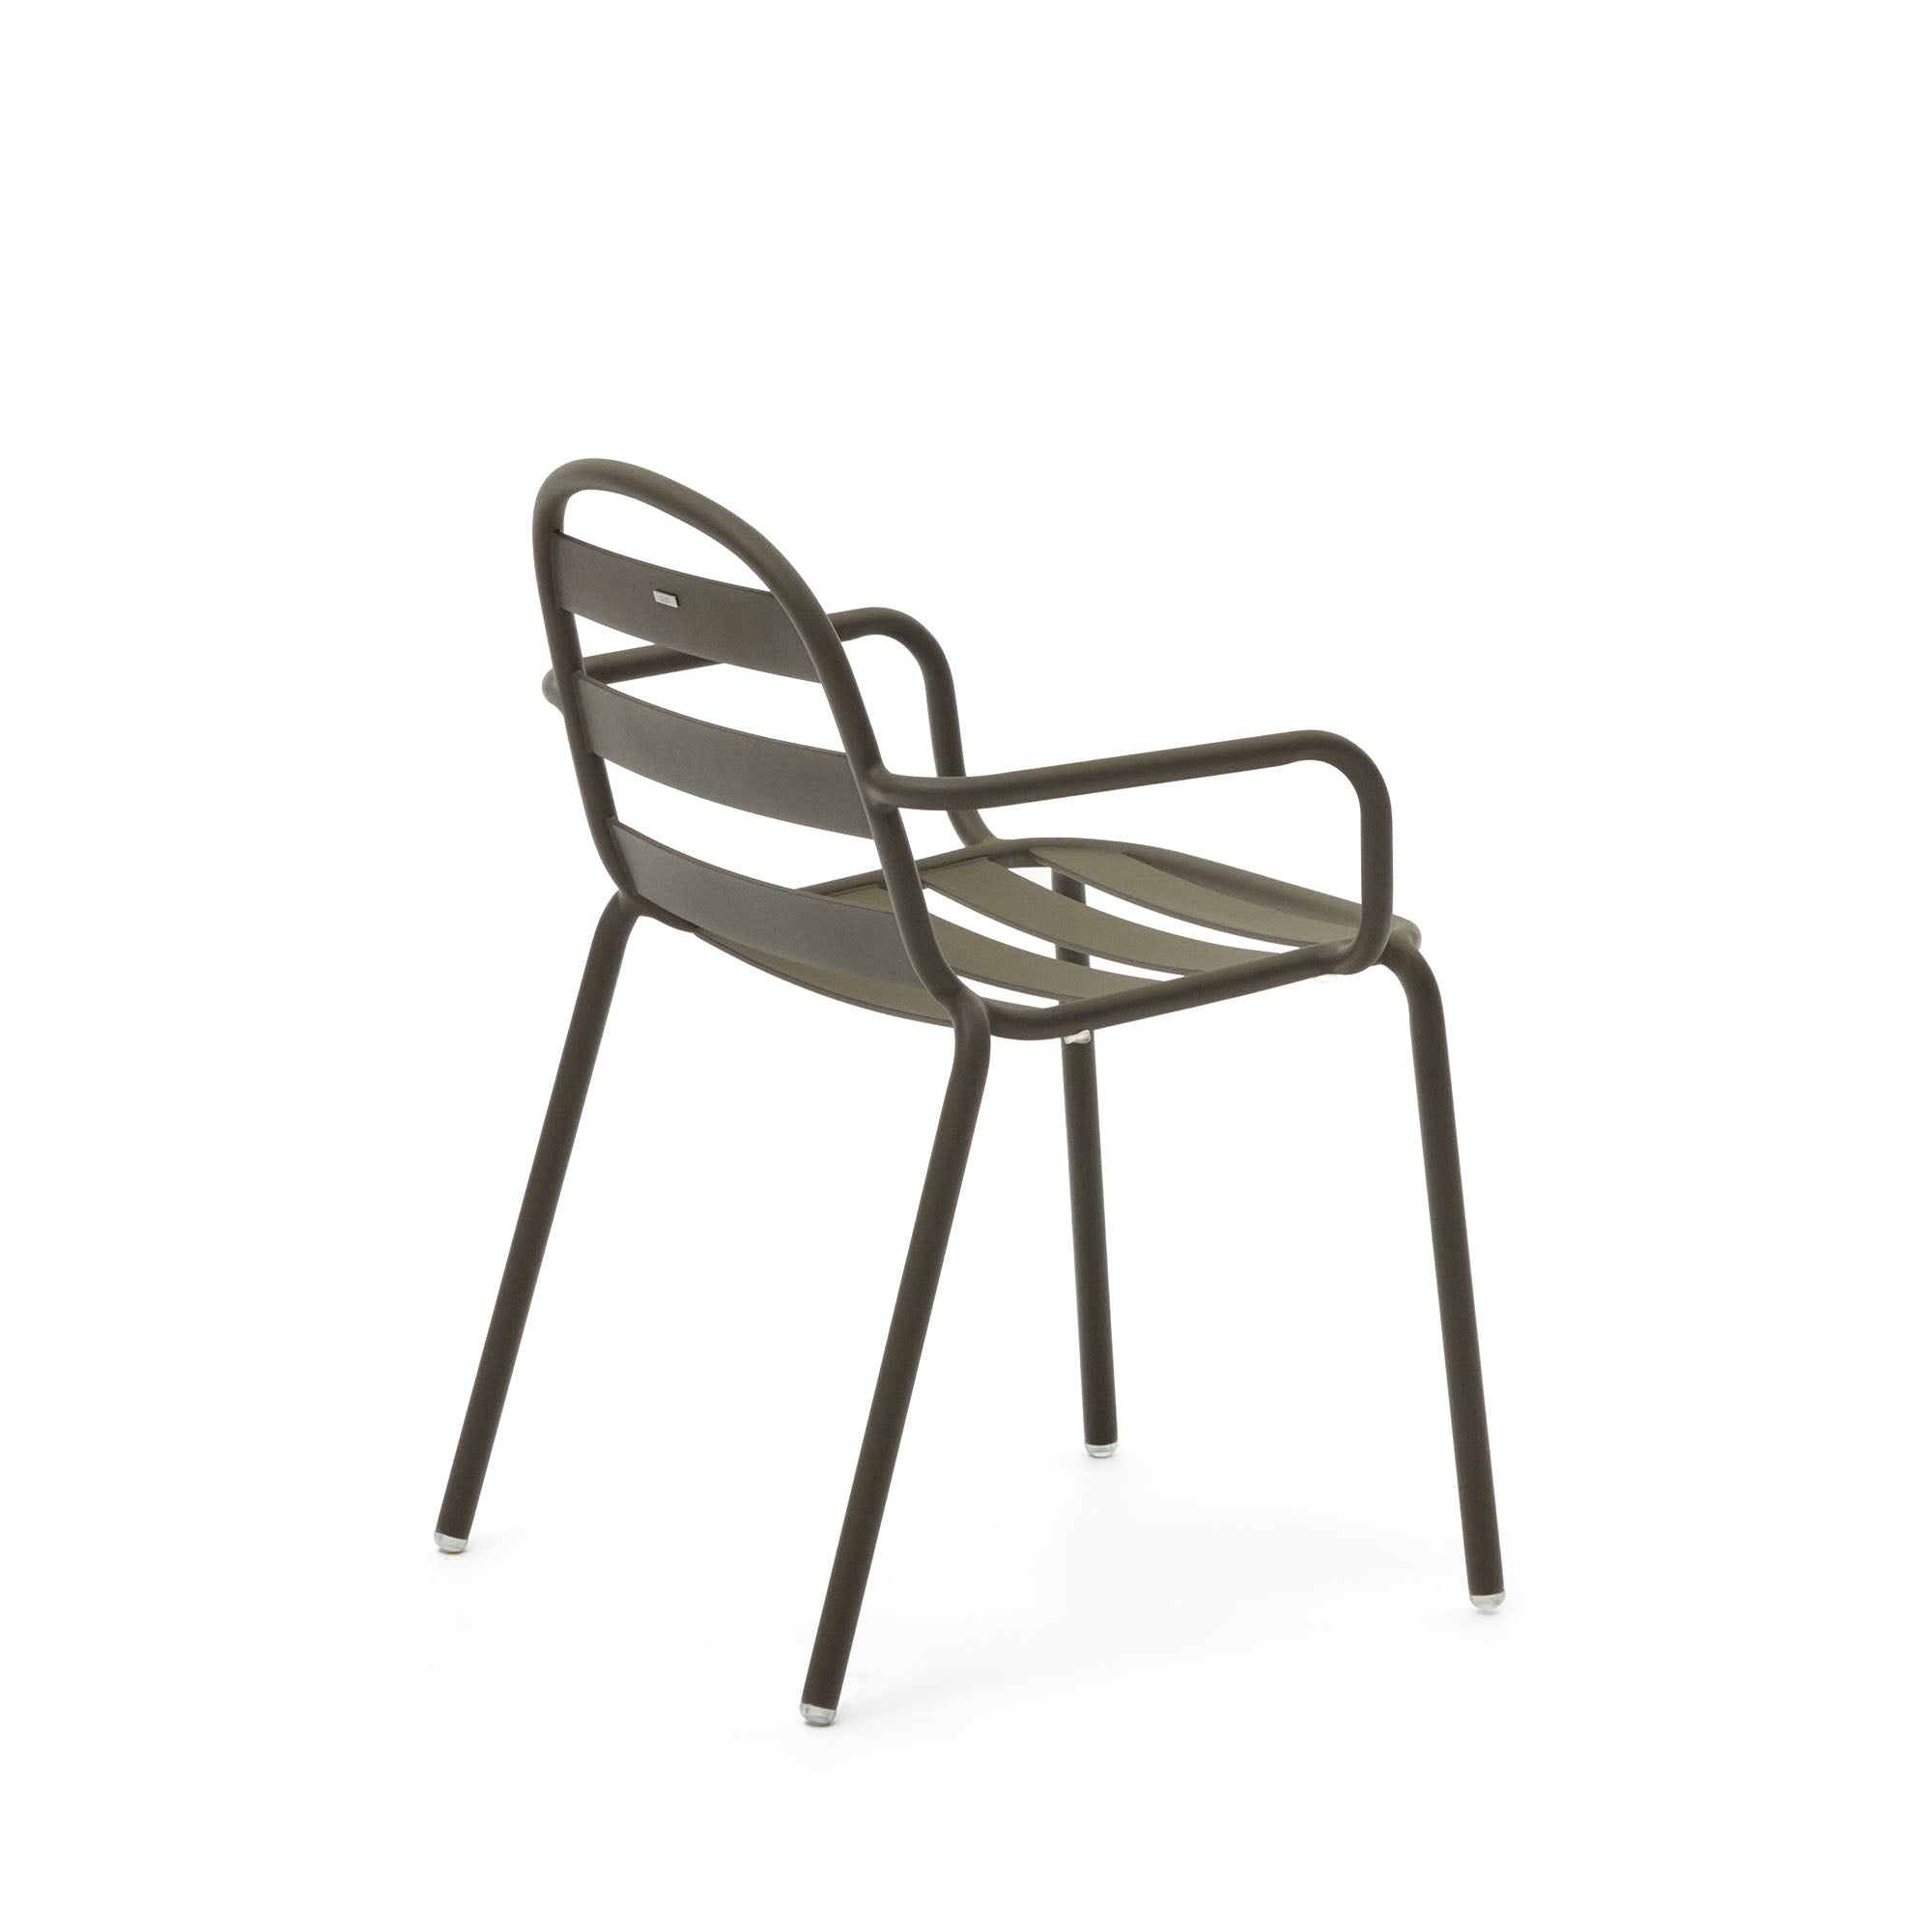 Joncols egymásba rakható kültéri alumínium szék porszórt zöld színű bevonattal